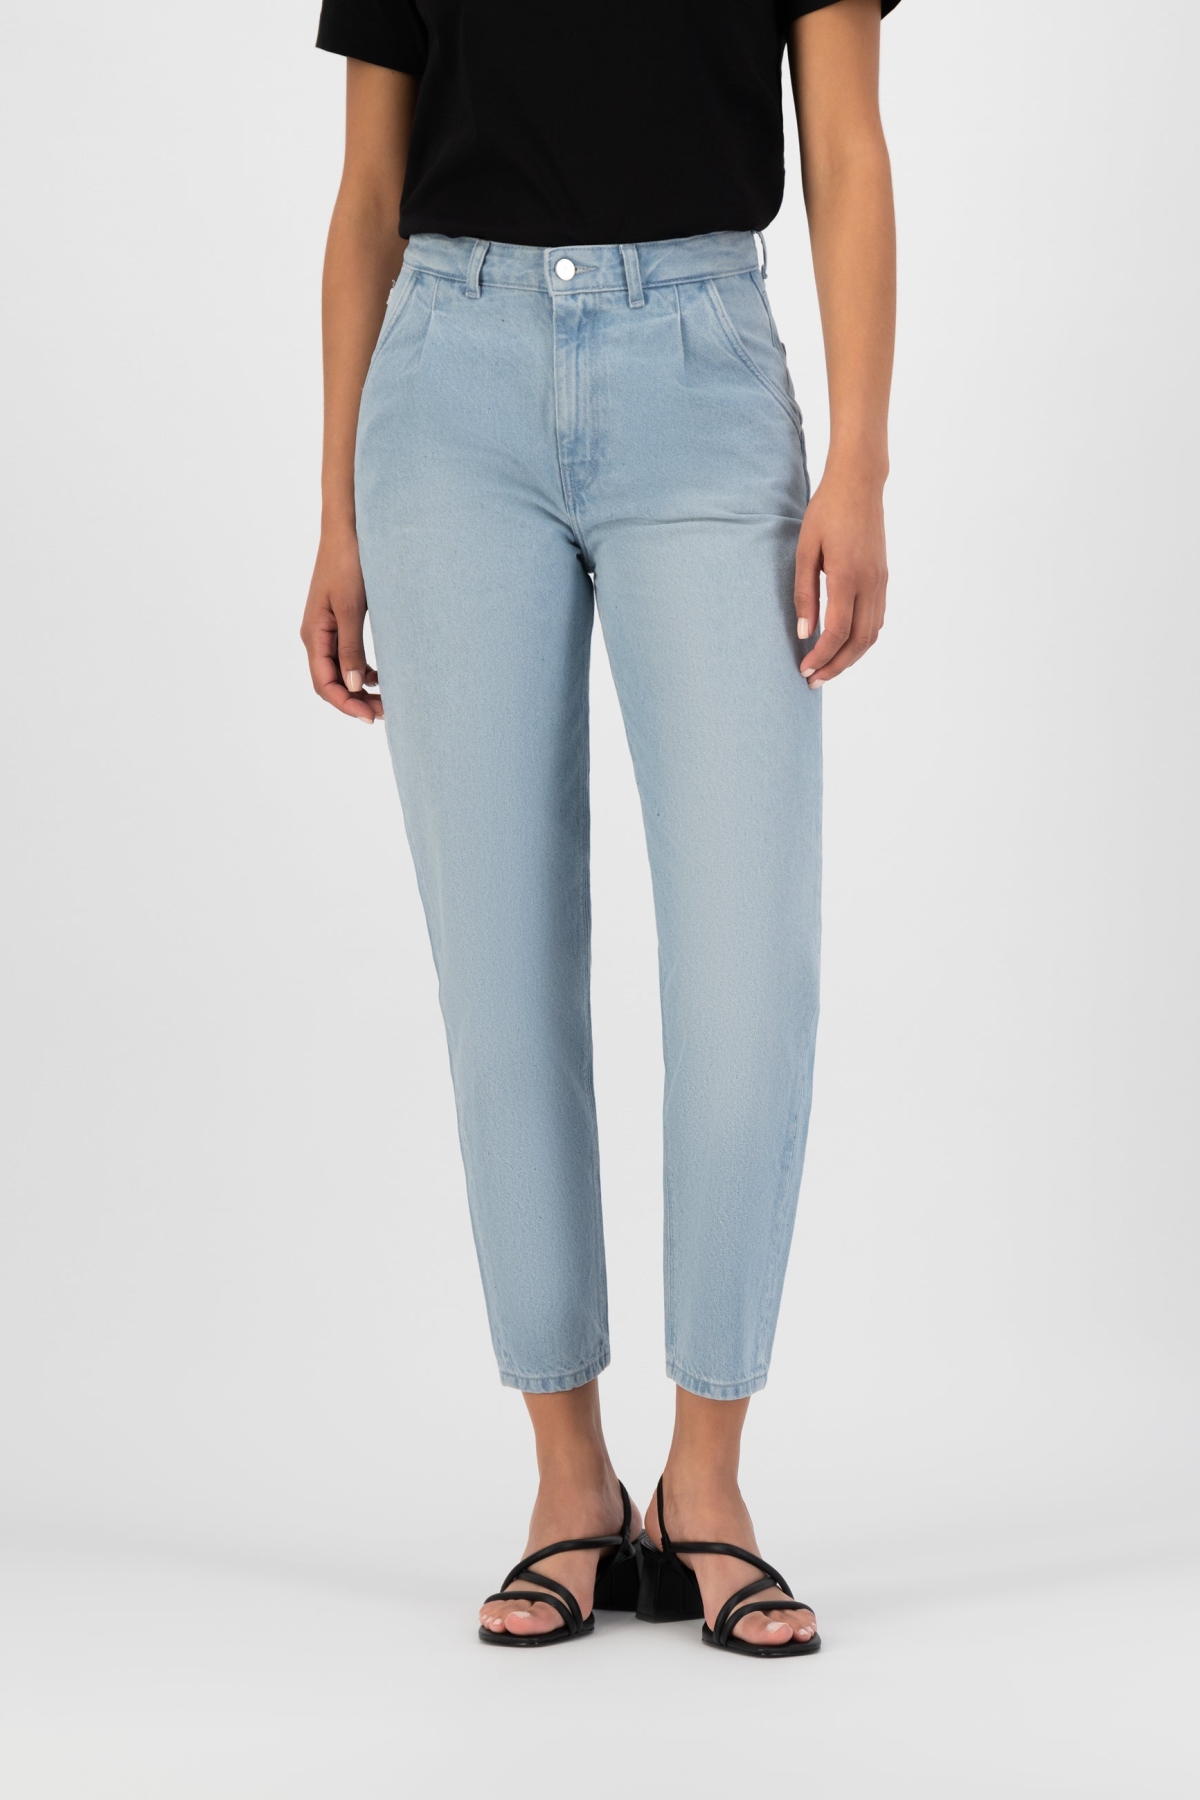 MUD Jeans dames vegan Spijkerbroek Loose Bailey Sunny Stone Blauw product